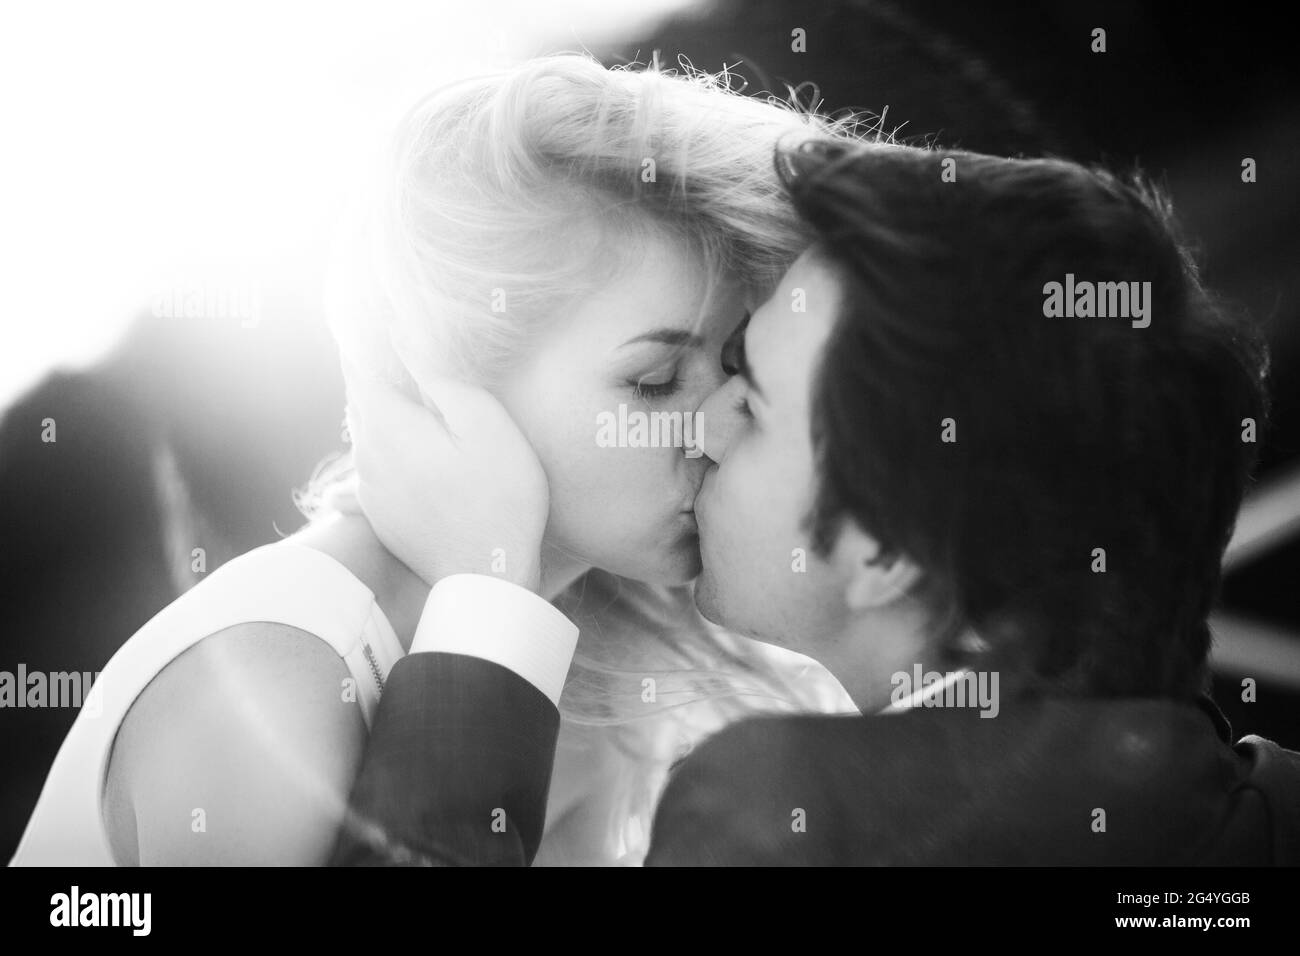 Brautpaar Braut und Bräutigam zusammen küssen schwarz-weiß Bild. Stockfoto